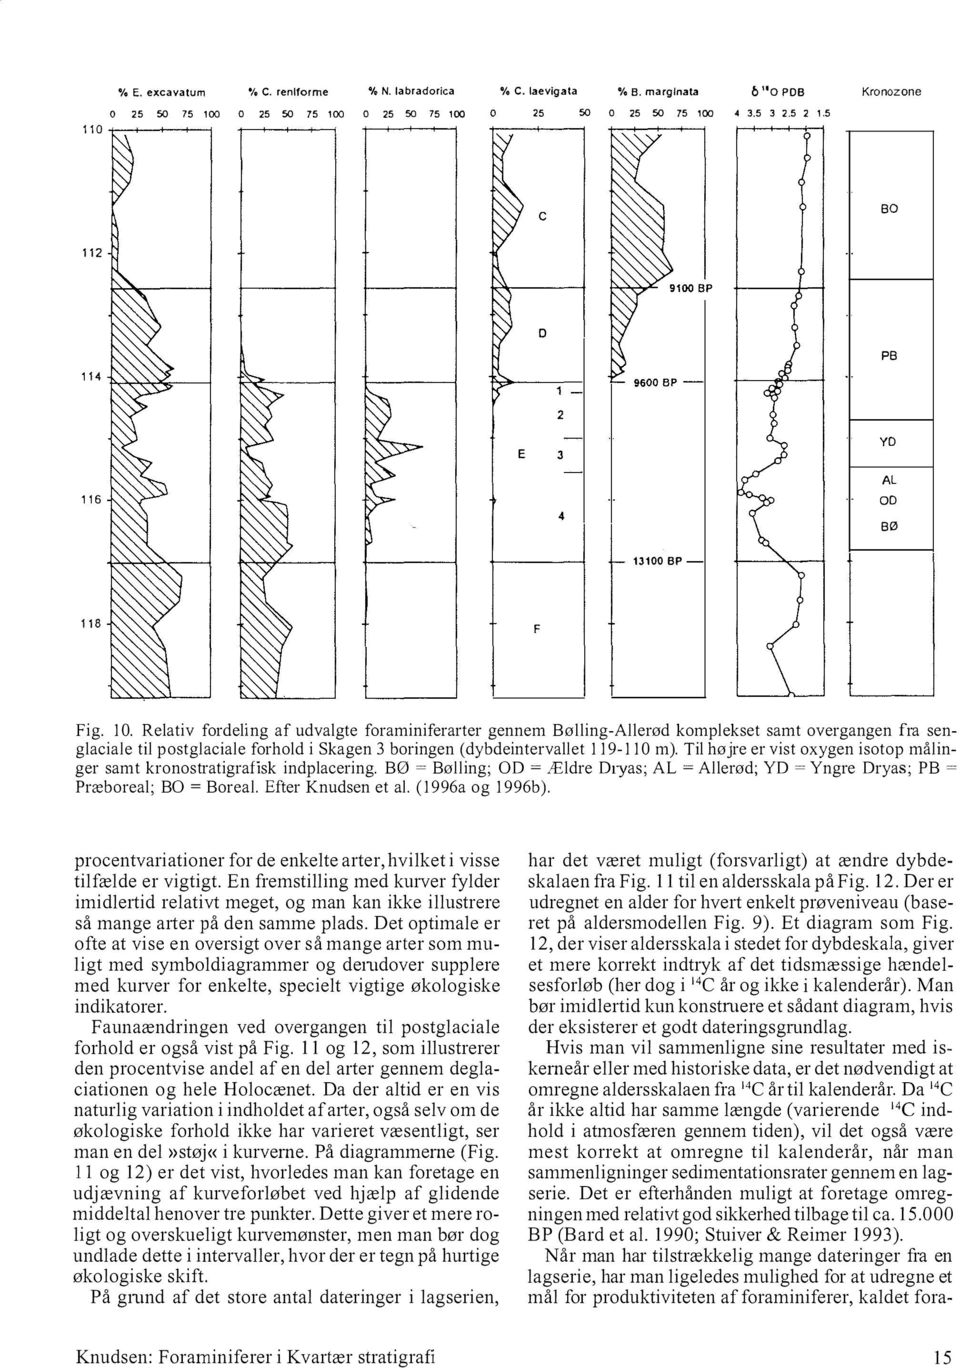 Relativ fordeling af udvalgte foraminiferarter gennem Bølling-Allerød komplekset samt overgangen fra senglaciale til postglaciale forhold i Skagen 3 boringen (dybdeintervallet 119-110 m).